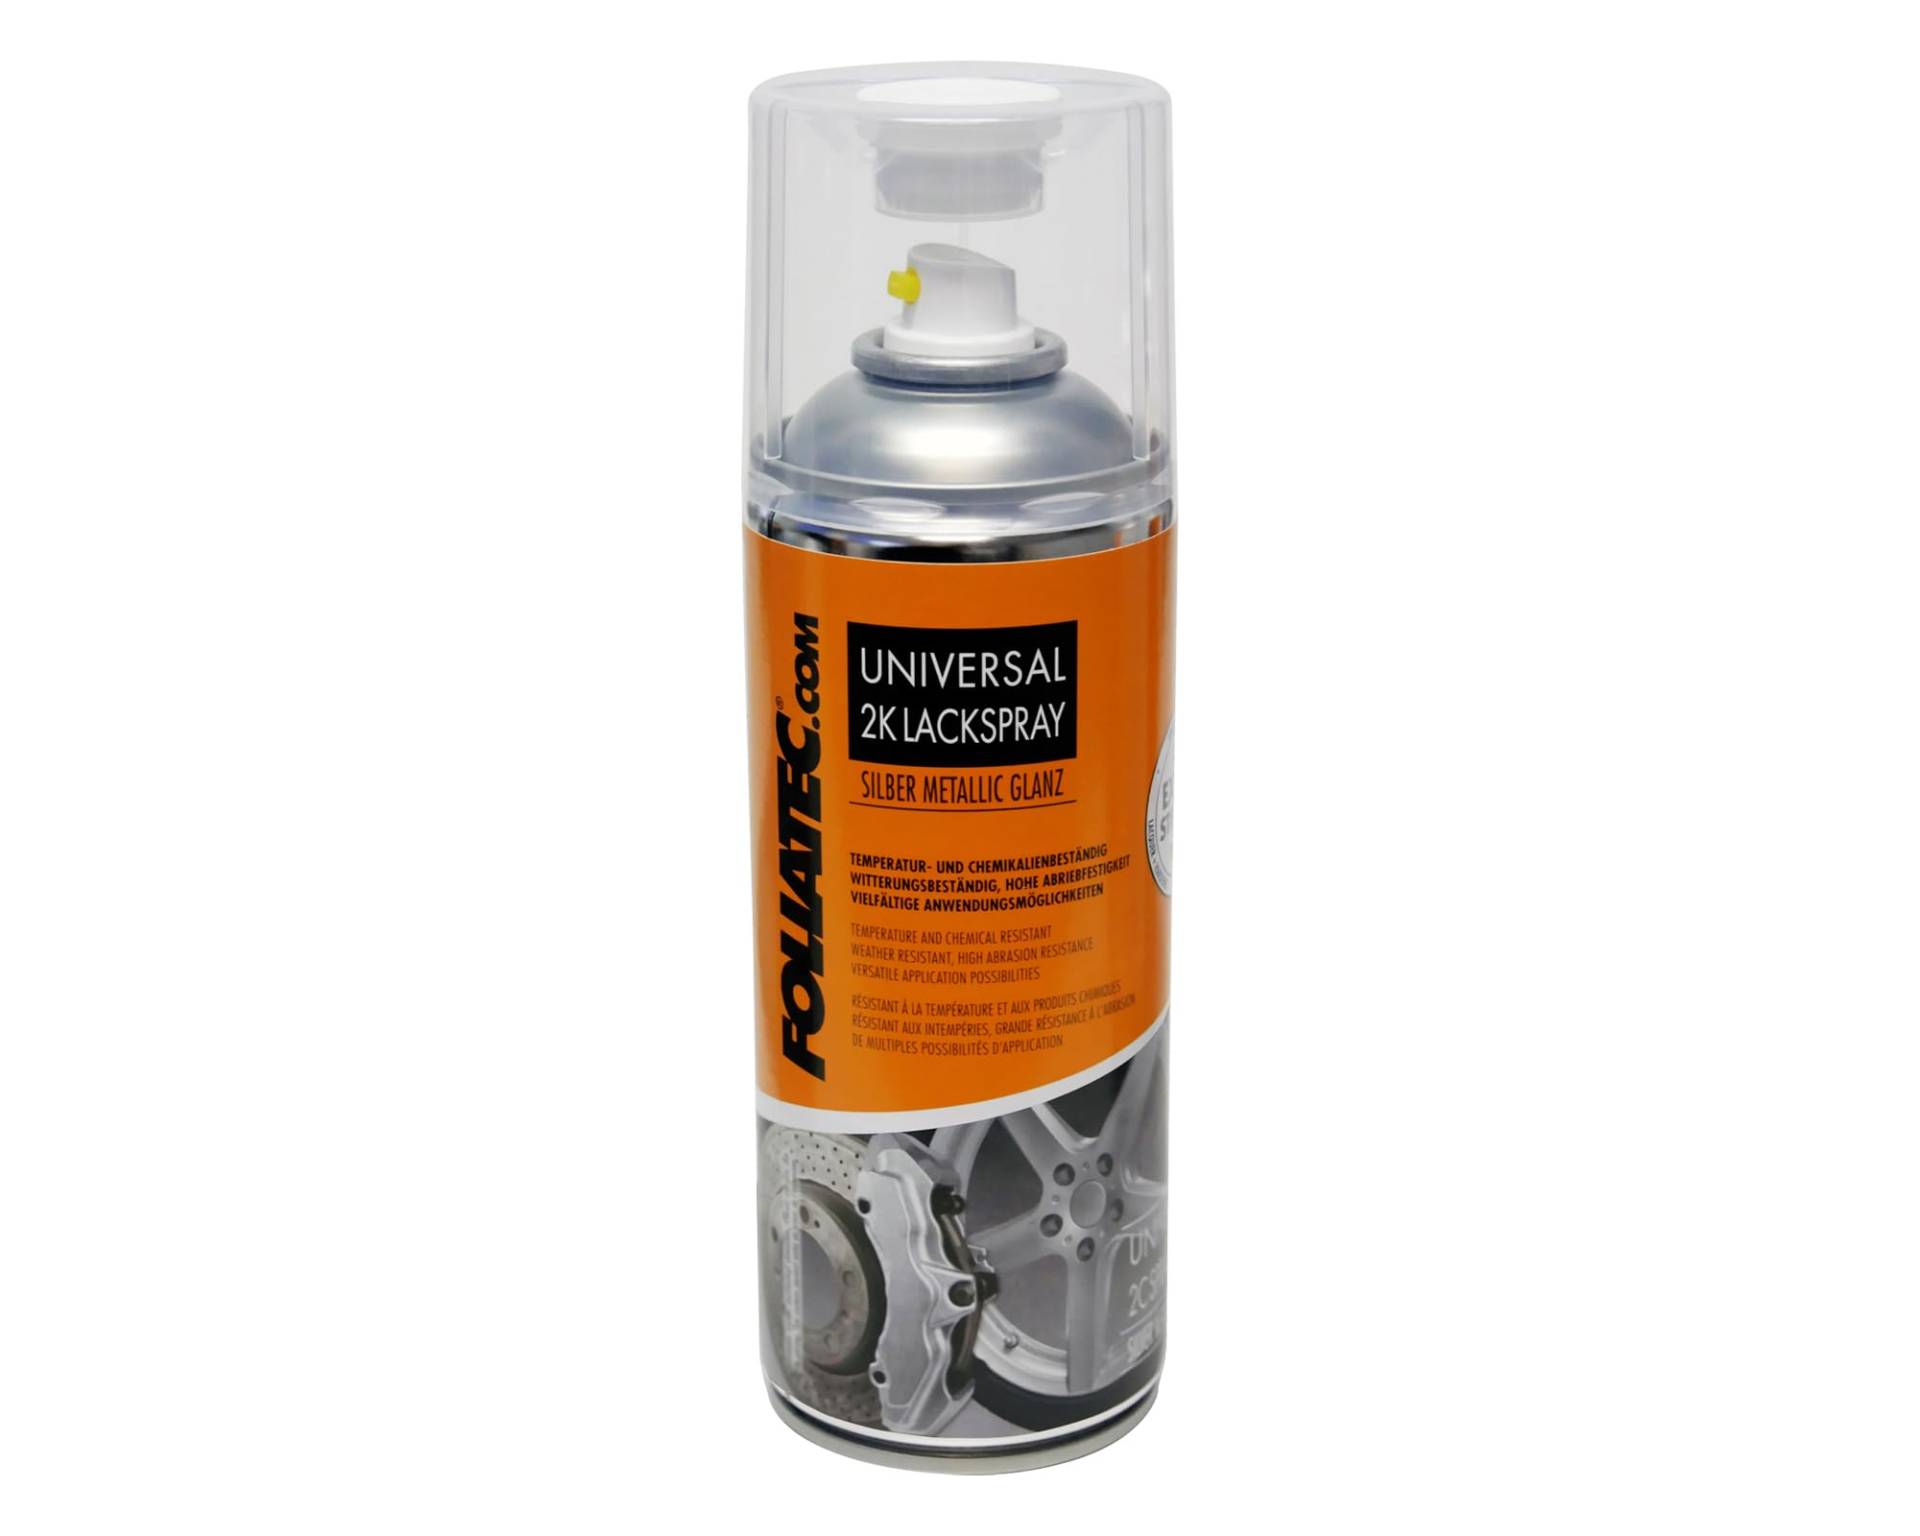 Foliatec Universal 2K Lackspray Spray Spraydose Hitzebeständig, silber metallic glänzend, 400 ml von Foliatec